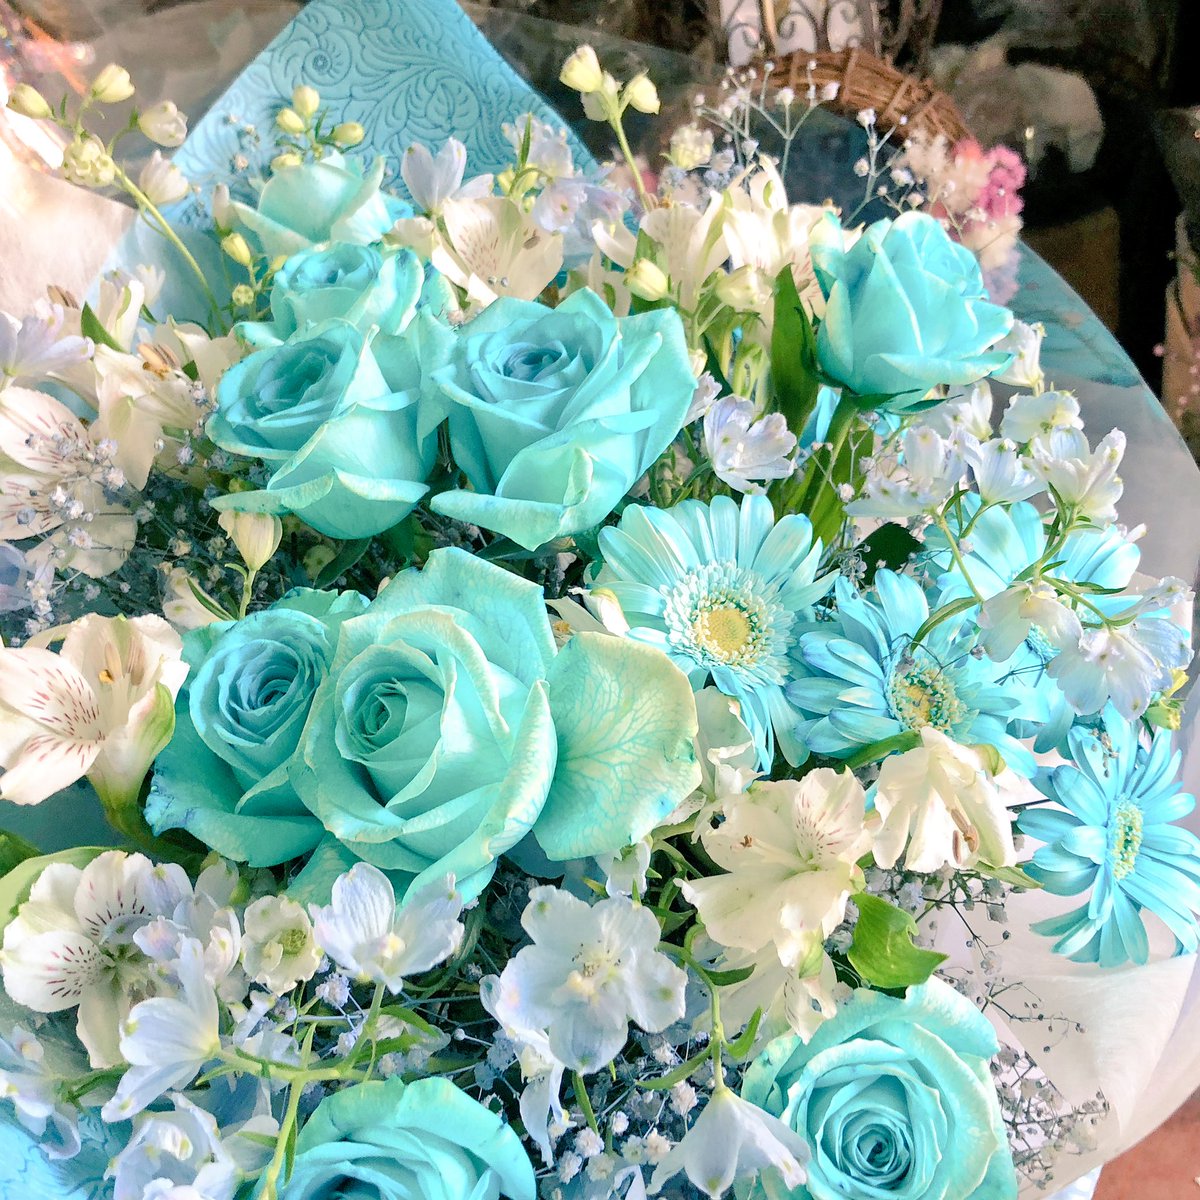 よしえ店長 在 Twitter 上 水色のお花の花束のご注文を頂きました Linlee 1stanniversary 名古屋 花屋 花広場mahiru T Co Jewtlidcqn Twitter